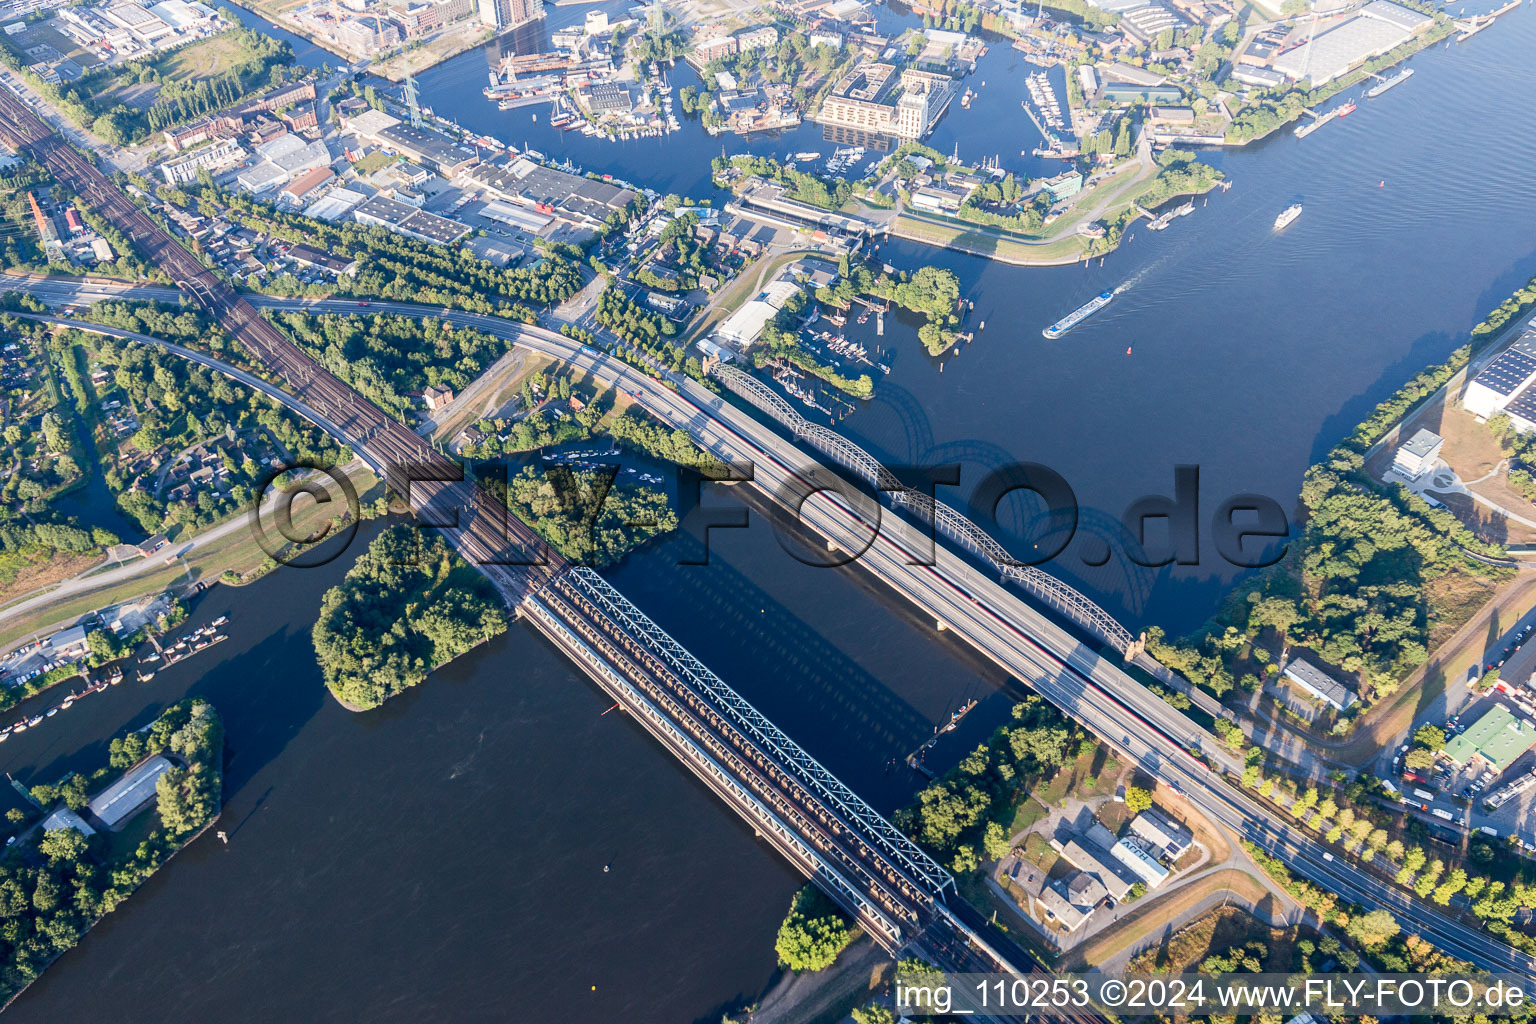 Vue aérienne de Ouvrages de ponts fluviaux : pont du vieux Harburg sur l'Elbe, pont du 17 juin, pont de l'autoroute A253 et pont ferroviaire sur la Süderelbe à Hamburg dans le département Hambourg, Allemagne